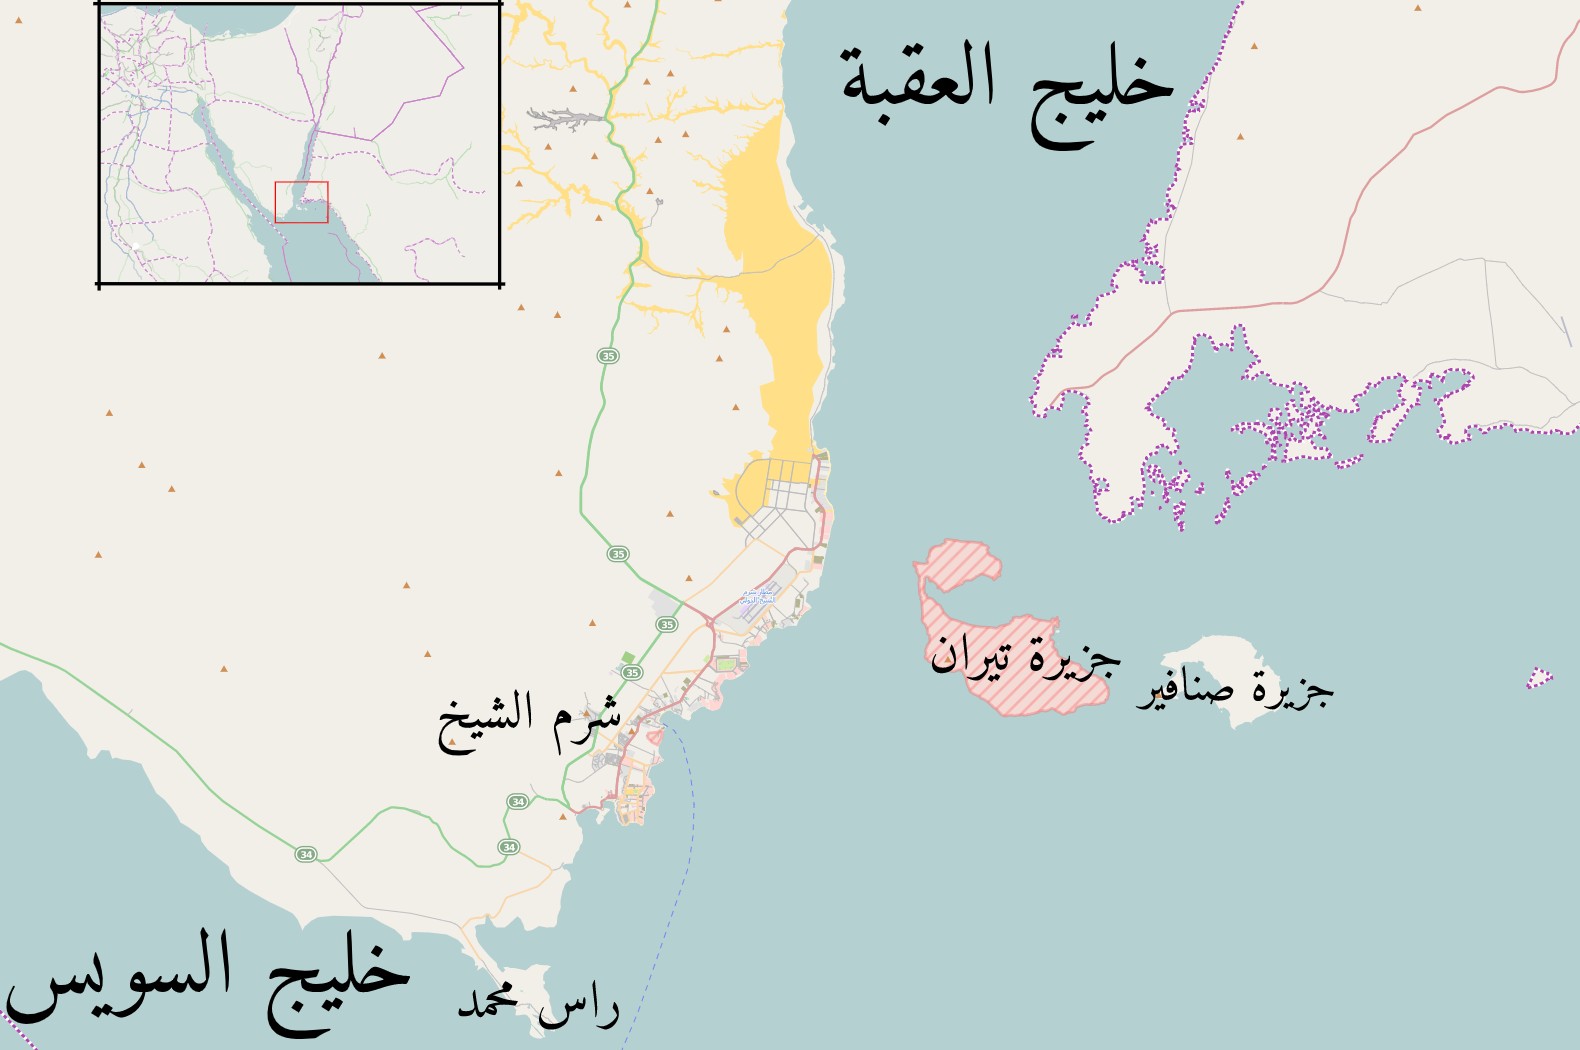 تقع جزيرة تيران عند مدخل خليج العقبة، على امتداد "مضيق تيران"، وهو طريق إسرائيل الوحيد لدخول البحر الأحمر.